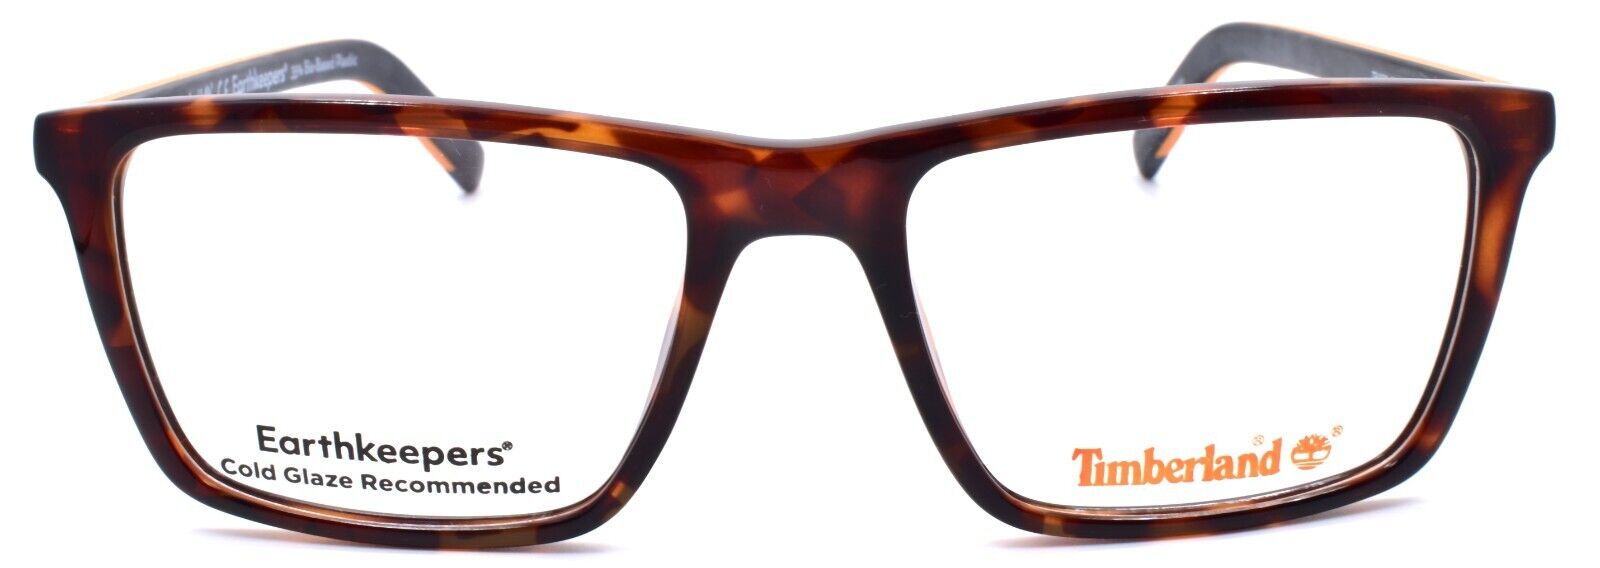 2-TIMBERLAND TB1680 052 Men's Eyeglasses Frames 54-18-145 Dark Havana-889214162793-IKSpecs